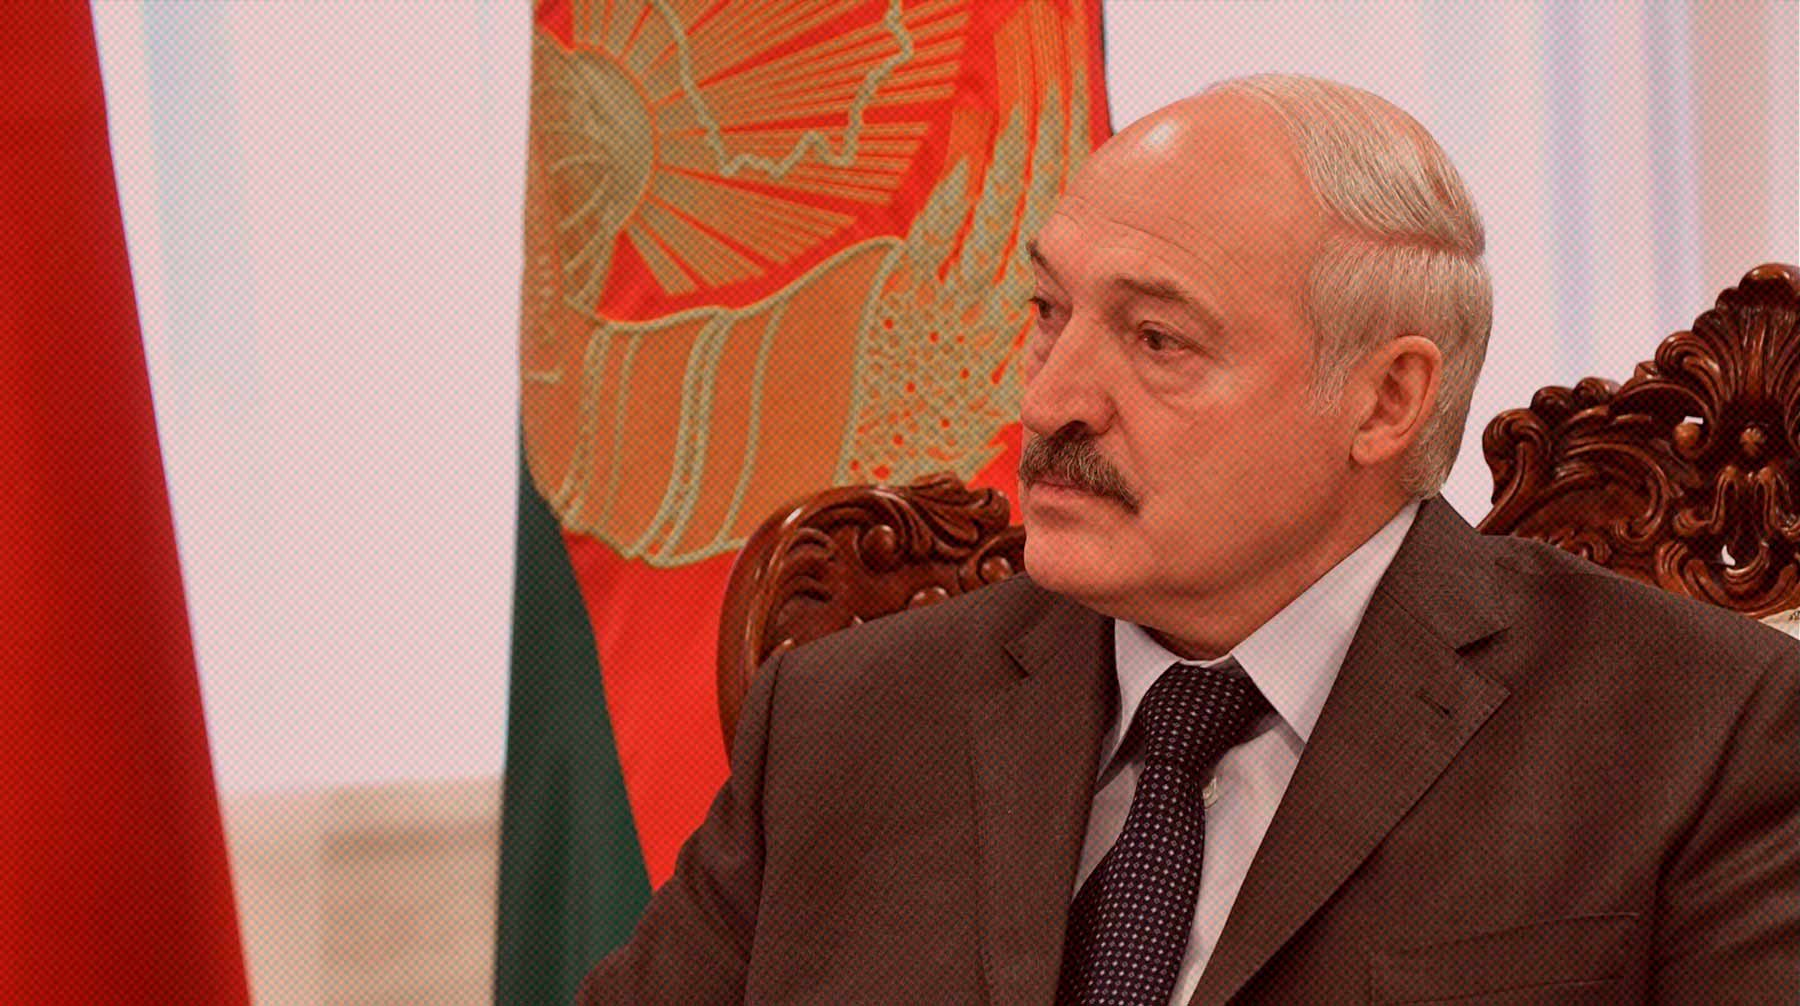 Dailystorm - Лавров рассказал, как Лукашенко предложил Путину разрешить миром ситуацию с Пригожиным и ЧВК «Вагнер»